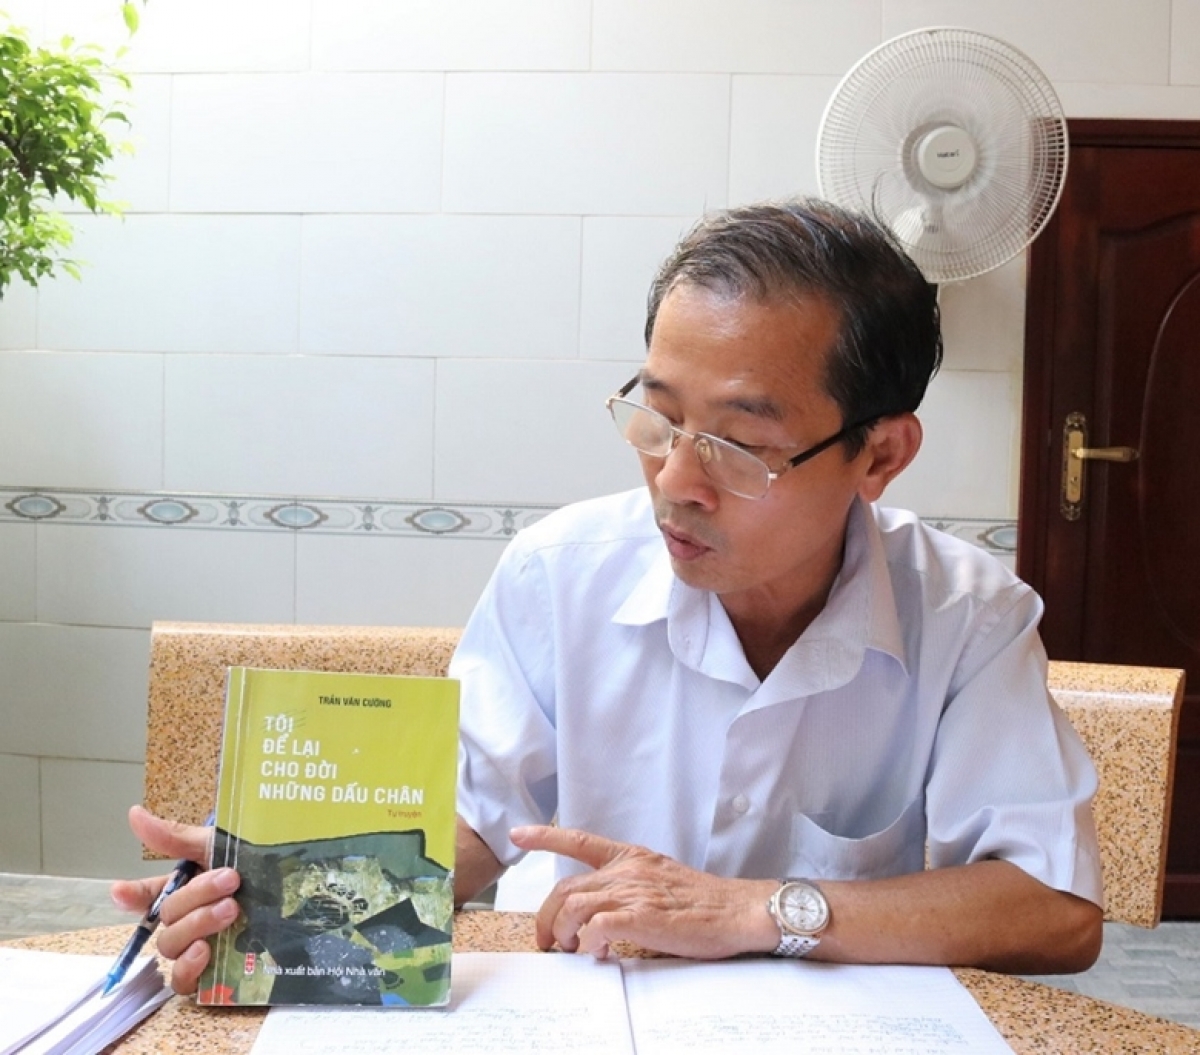 Cựu chiến binh, nhà thơ Trần Văn Cường chia sẻ về cuốn tự truyện "Tôi để lại cho đời những dấu chân"